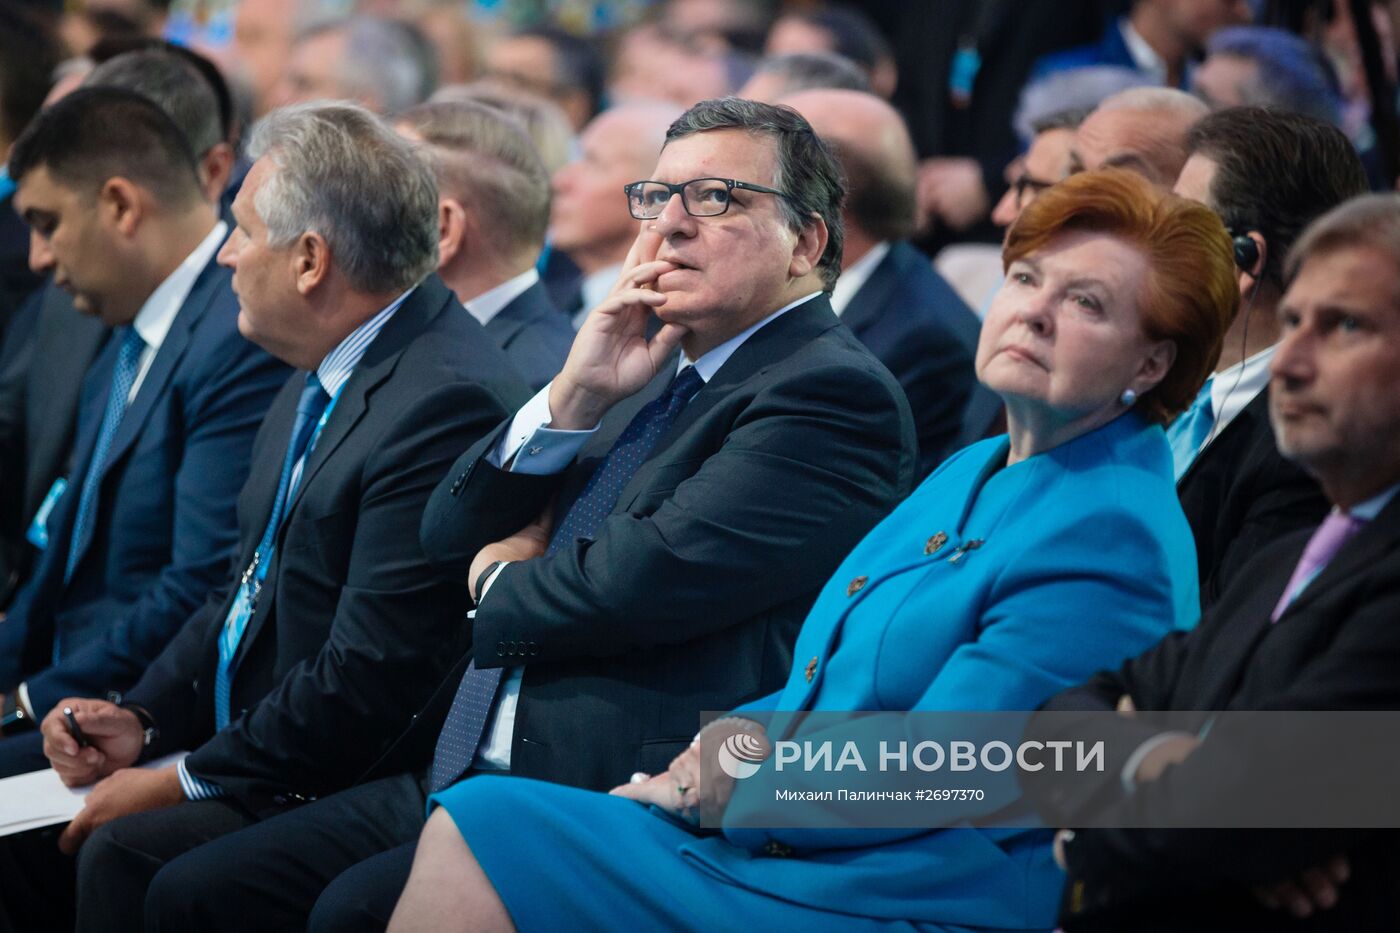 12-я встреча Ялтинской Европейской Стратегии в Киеве